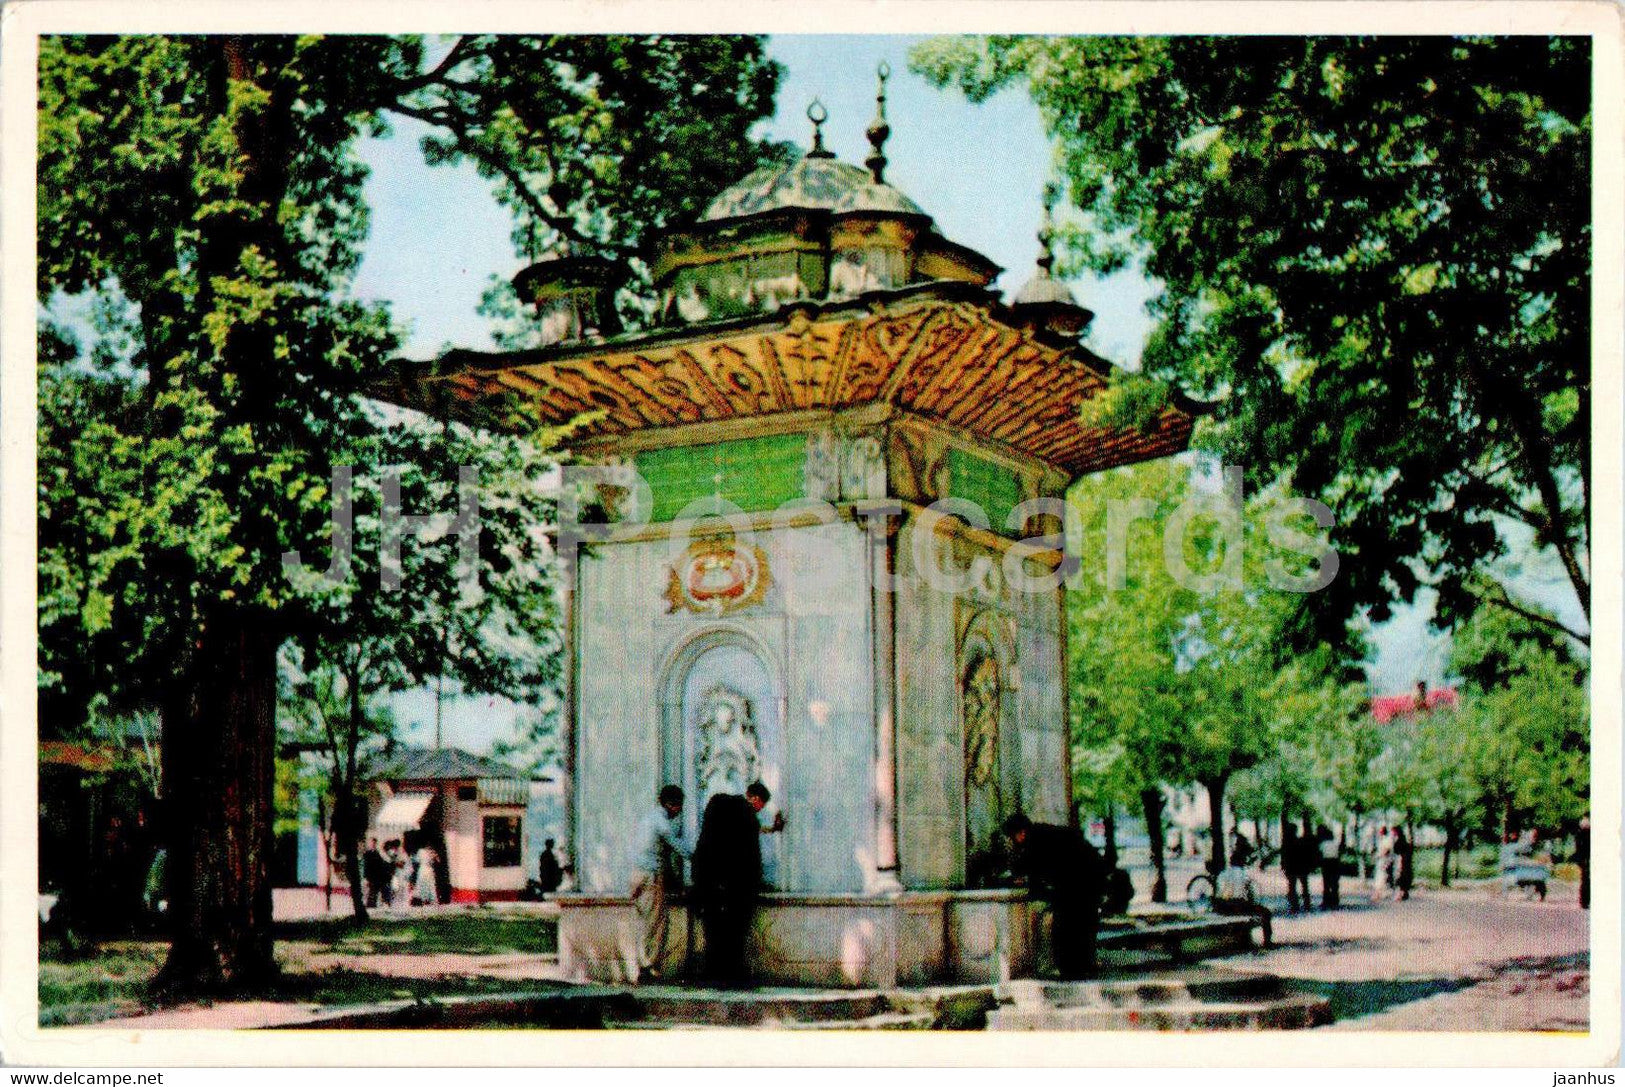 Istanbul - The Fountain of Kucuksu - 1 - old postcard - Turkey - unused - JH Postcards